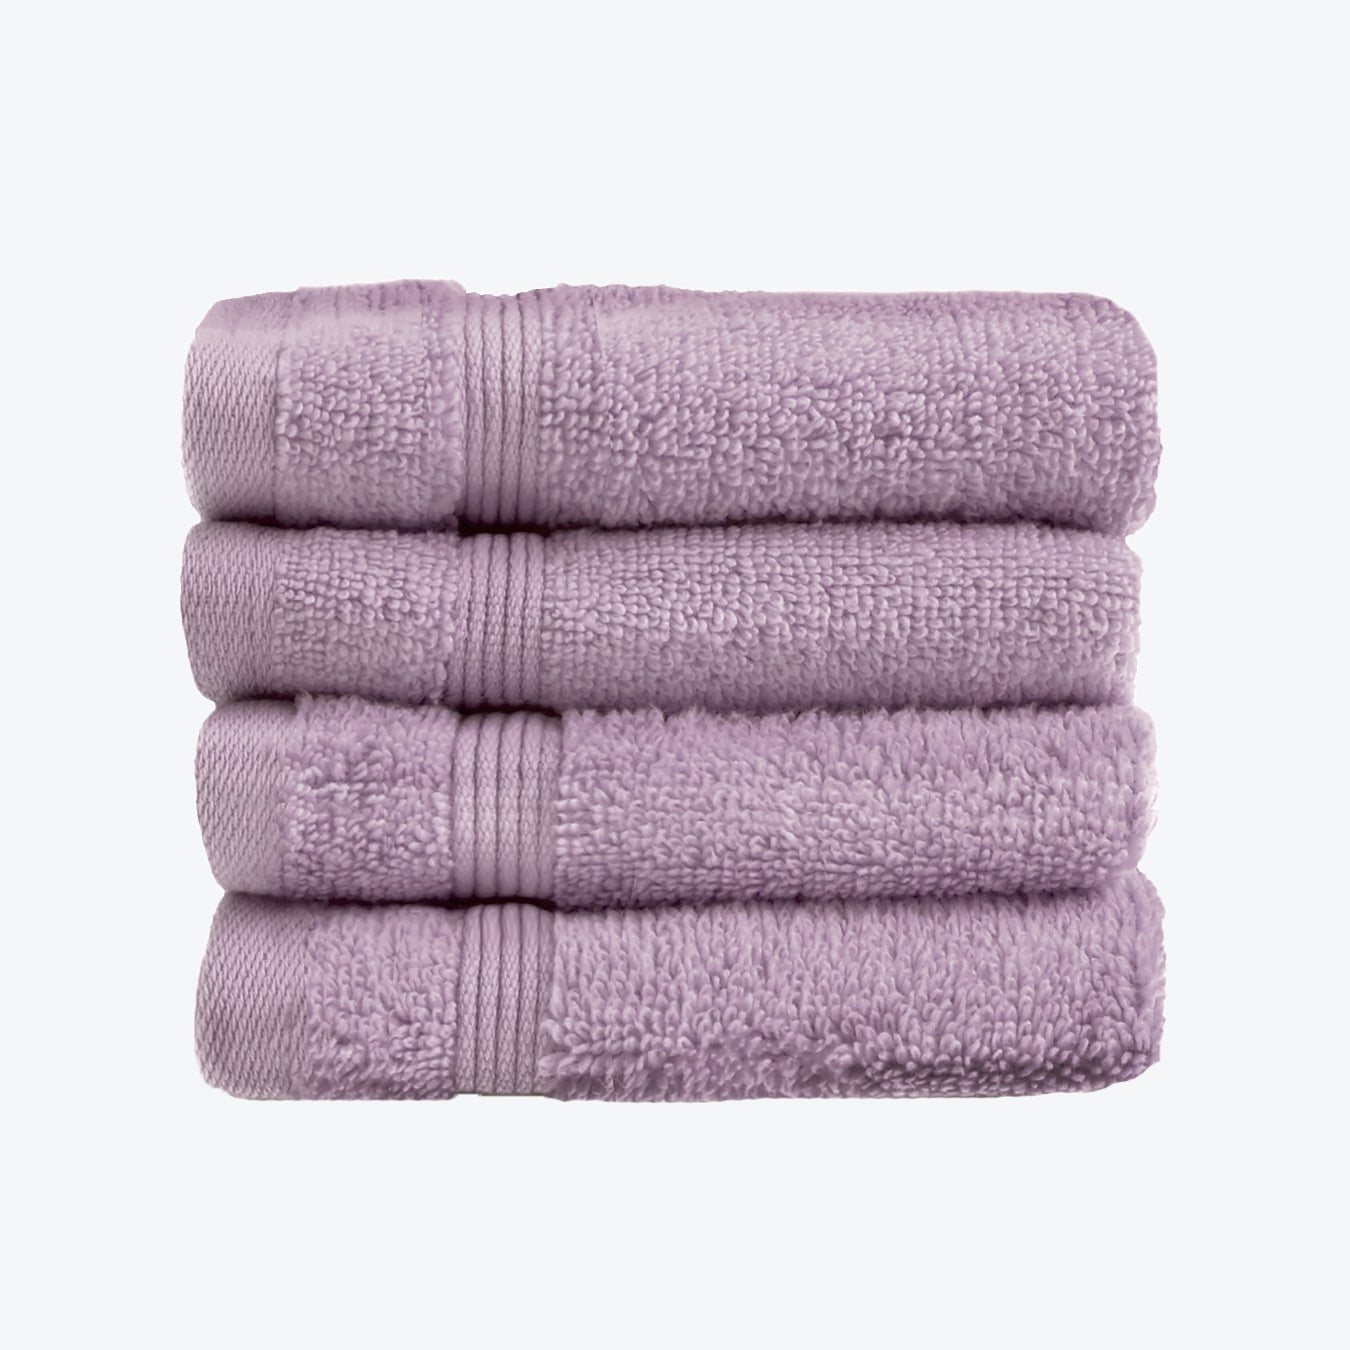 Heather Lilac Egyptian Towels 4pk Face Cloths Set- Premium Zero Twist Cotton Flannels